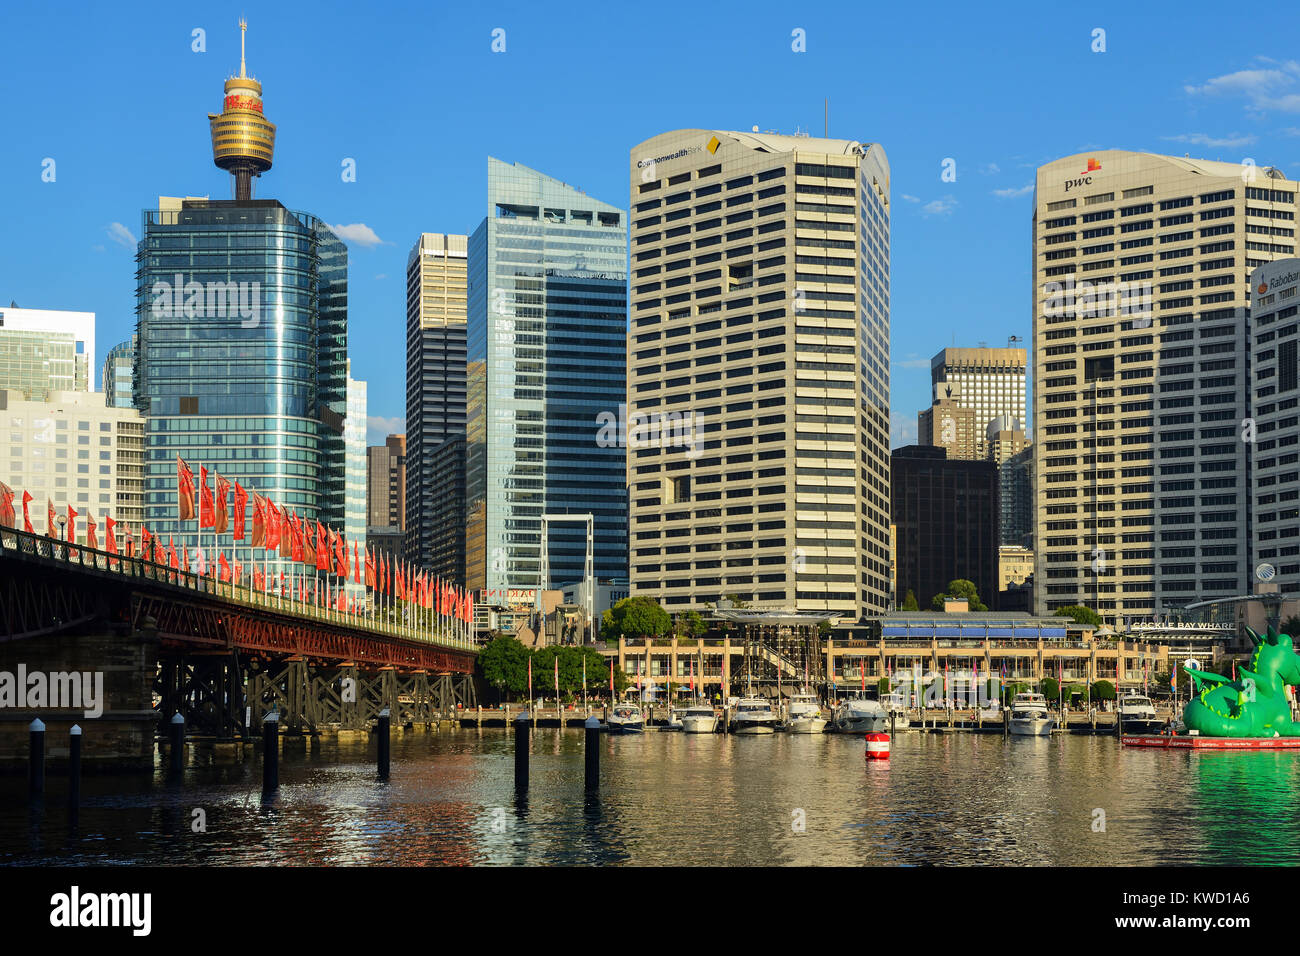 Pyrmont Bridge und Cockle Bay Wharf in Darling Harbour, Sydney Central Business District im Hintergrund - Sydney, New South Wales, Australien Stockfoto